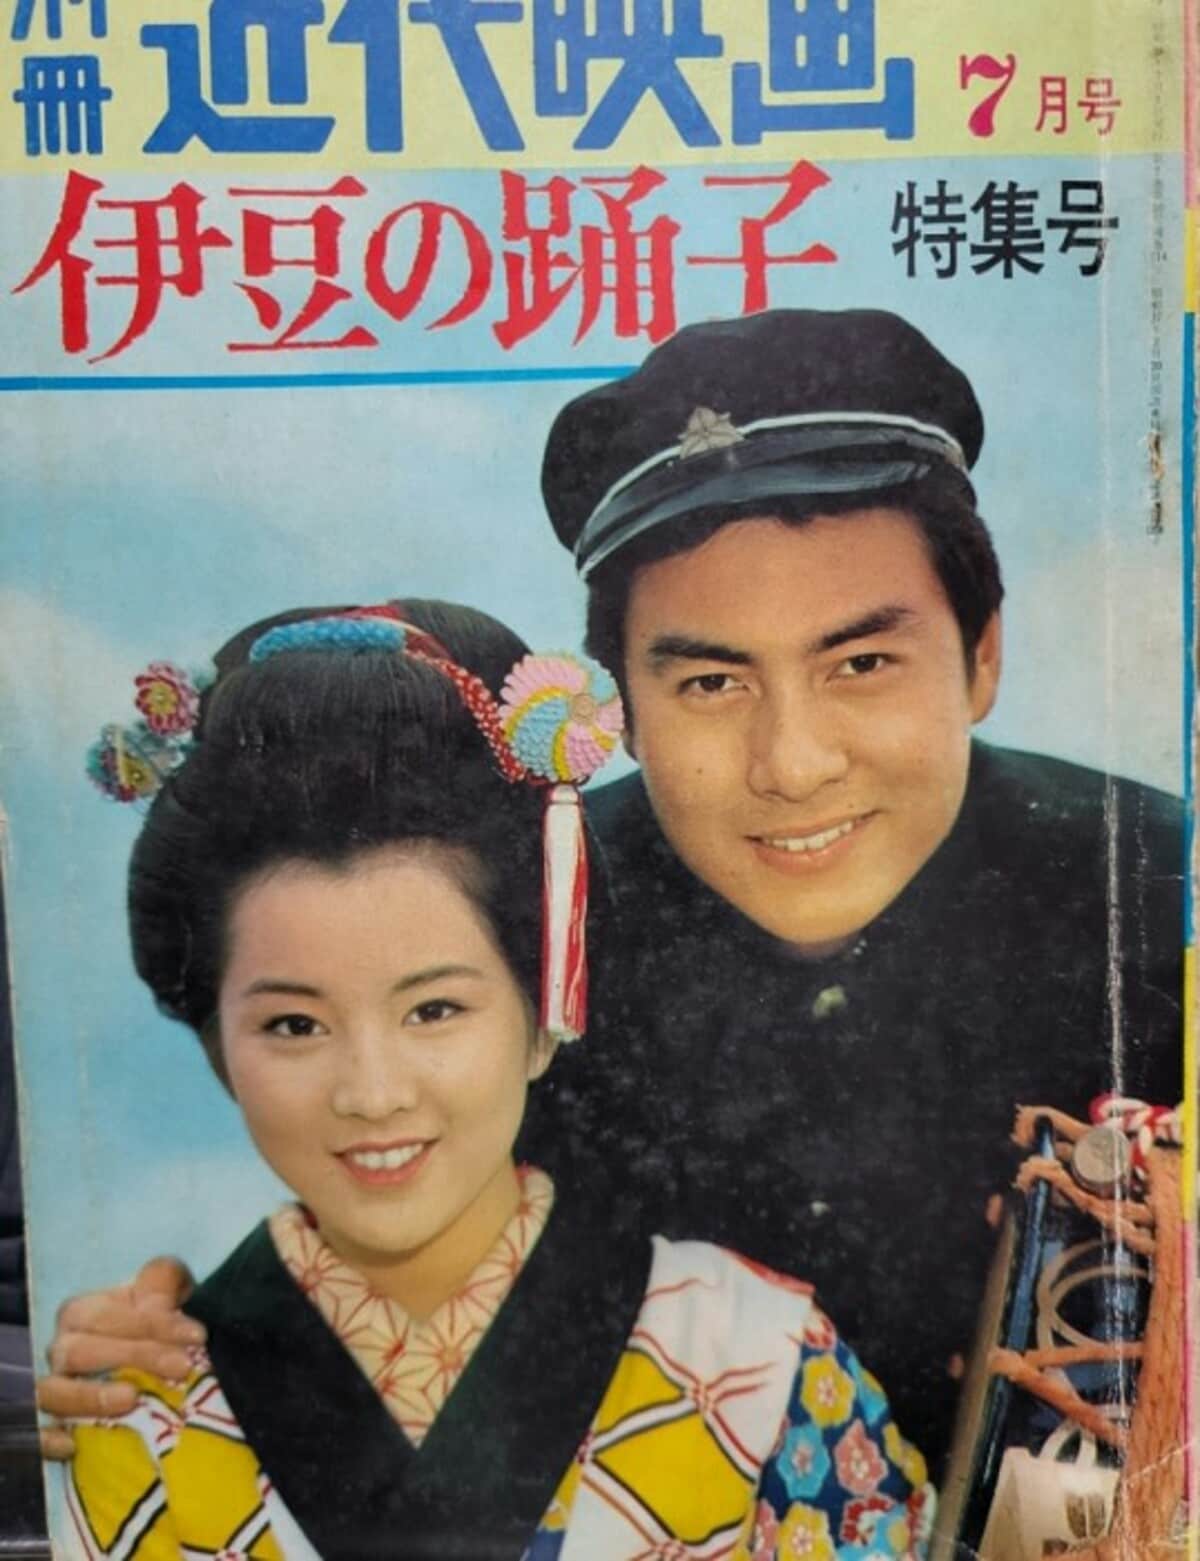 高橋英樹、19歳の頃の吉永小百合との表紙を公開「初々しくて可愛い」「美しい」の声 | エンタメ総合 | ABEMA TIMES | アベマタイムズ